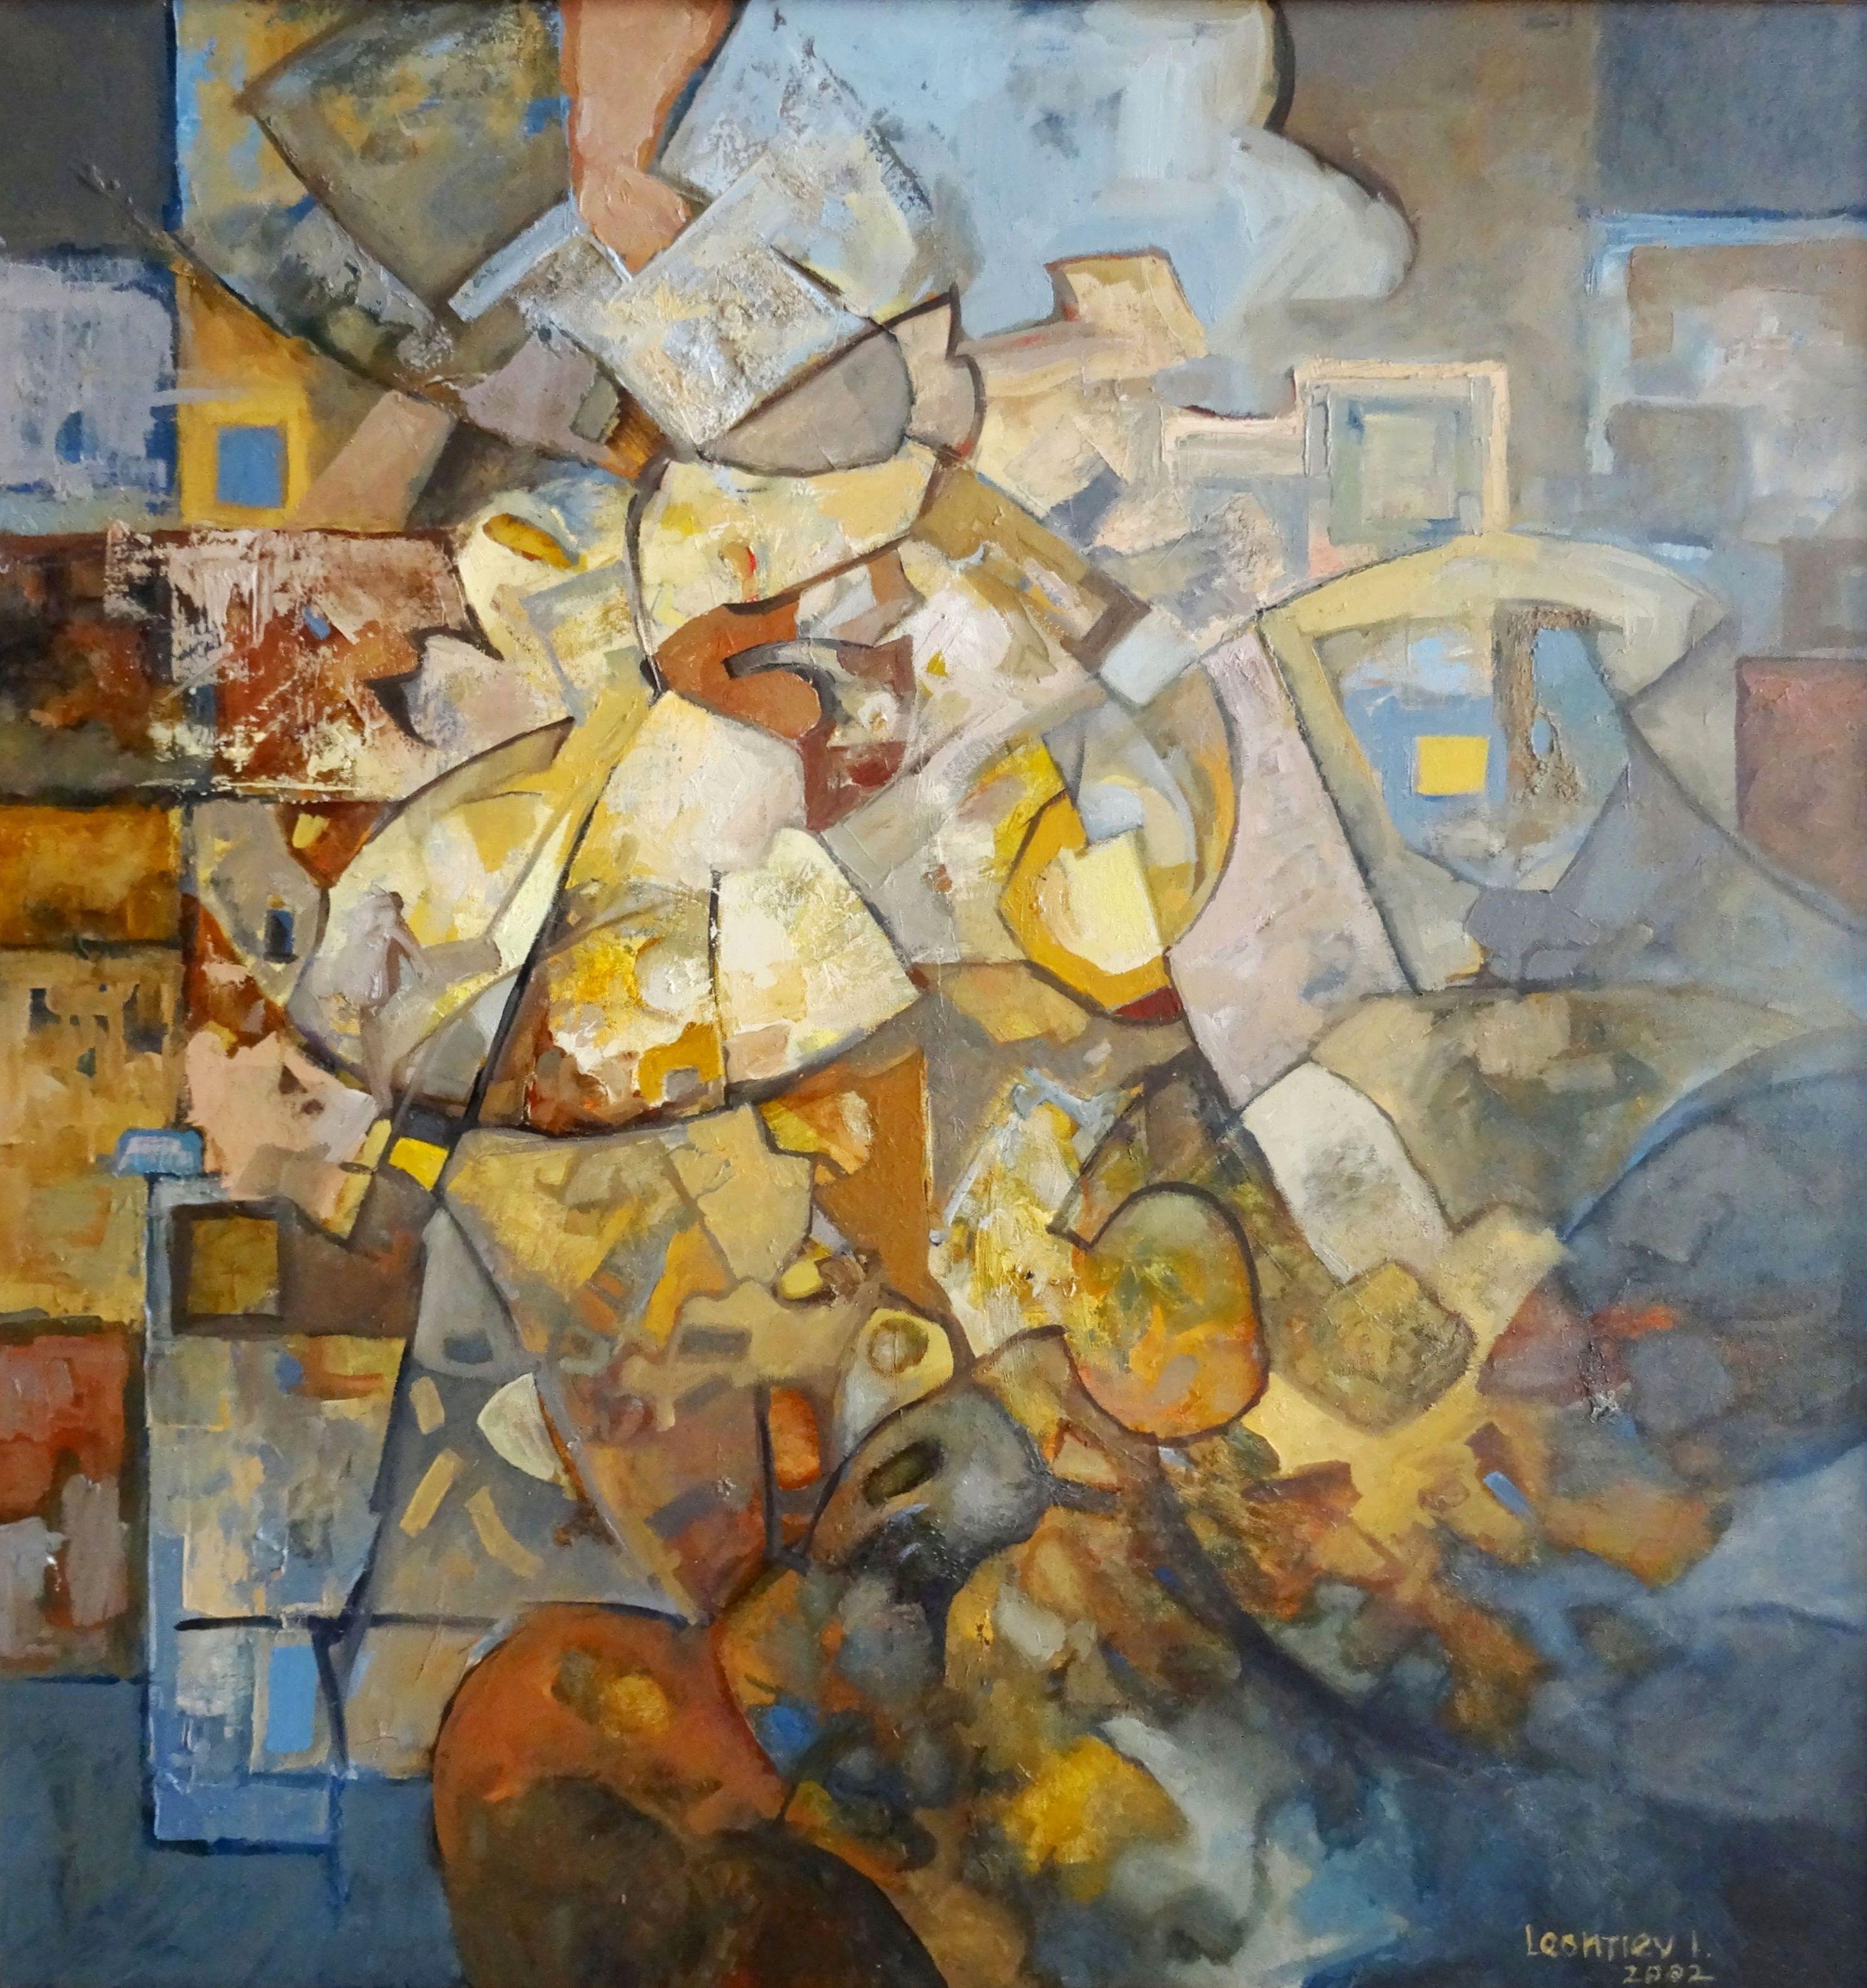  Mantra de la pluie champignon. 2002, huile sur toile, 95,5 x 90,5 cm